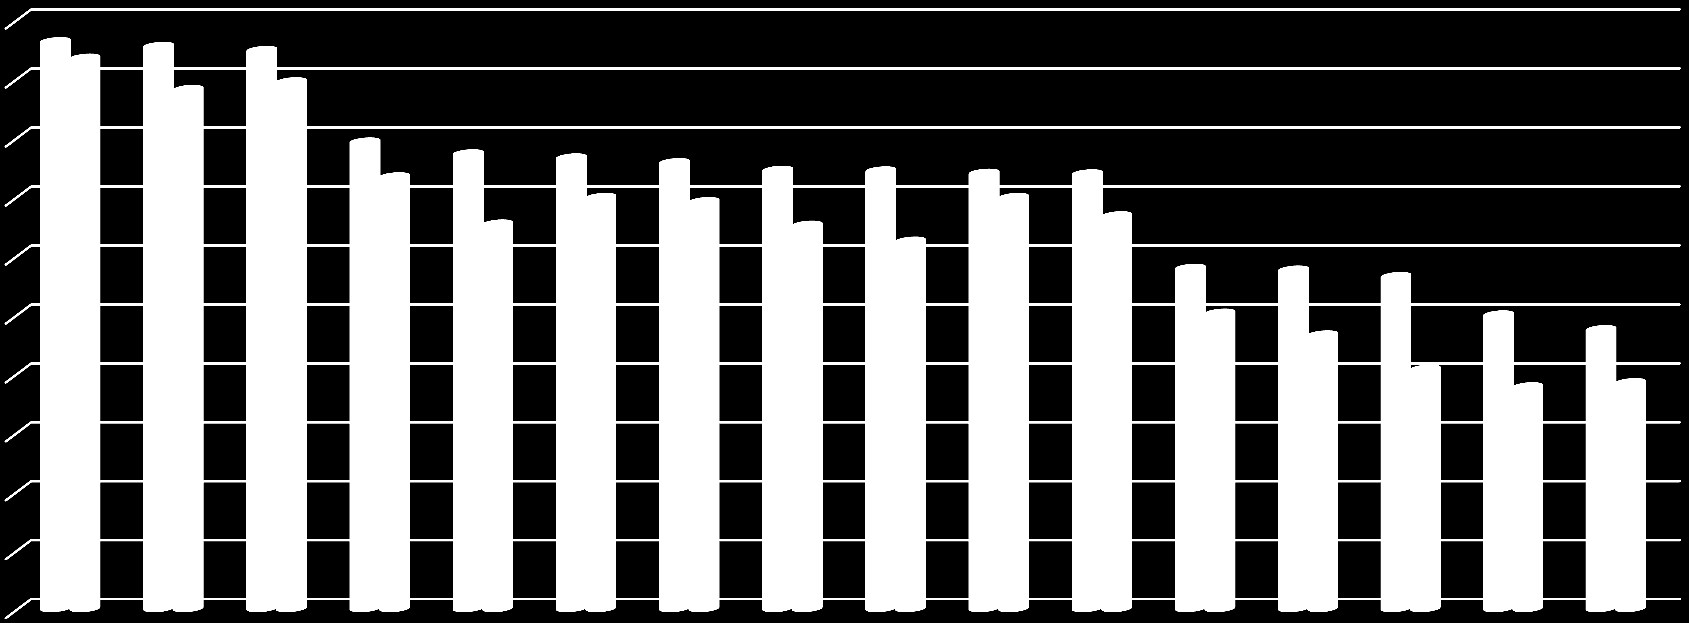 Haushalte [%] Der Stand des Breitbandausbaus heute Aktuelle Versorgung in den Bundesländern mit 30 Mbit/s und 50